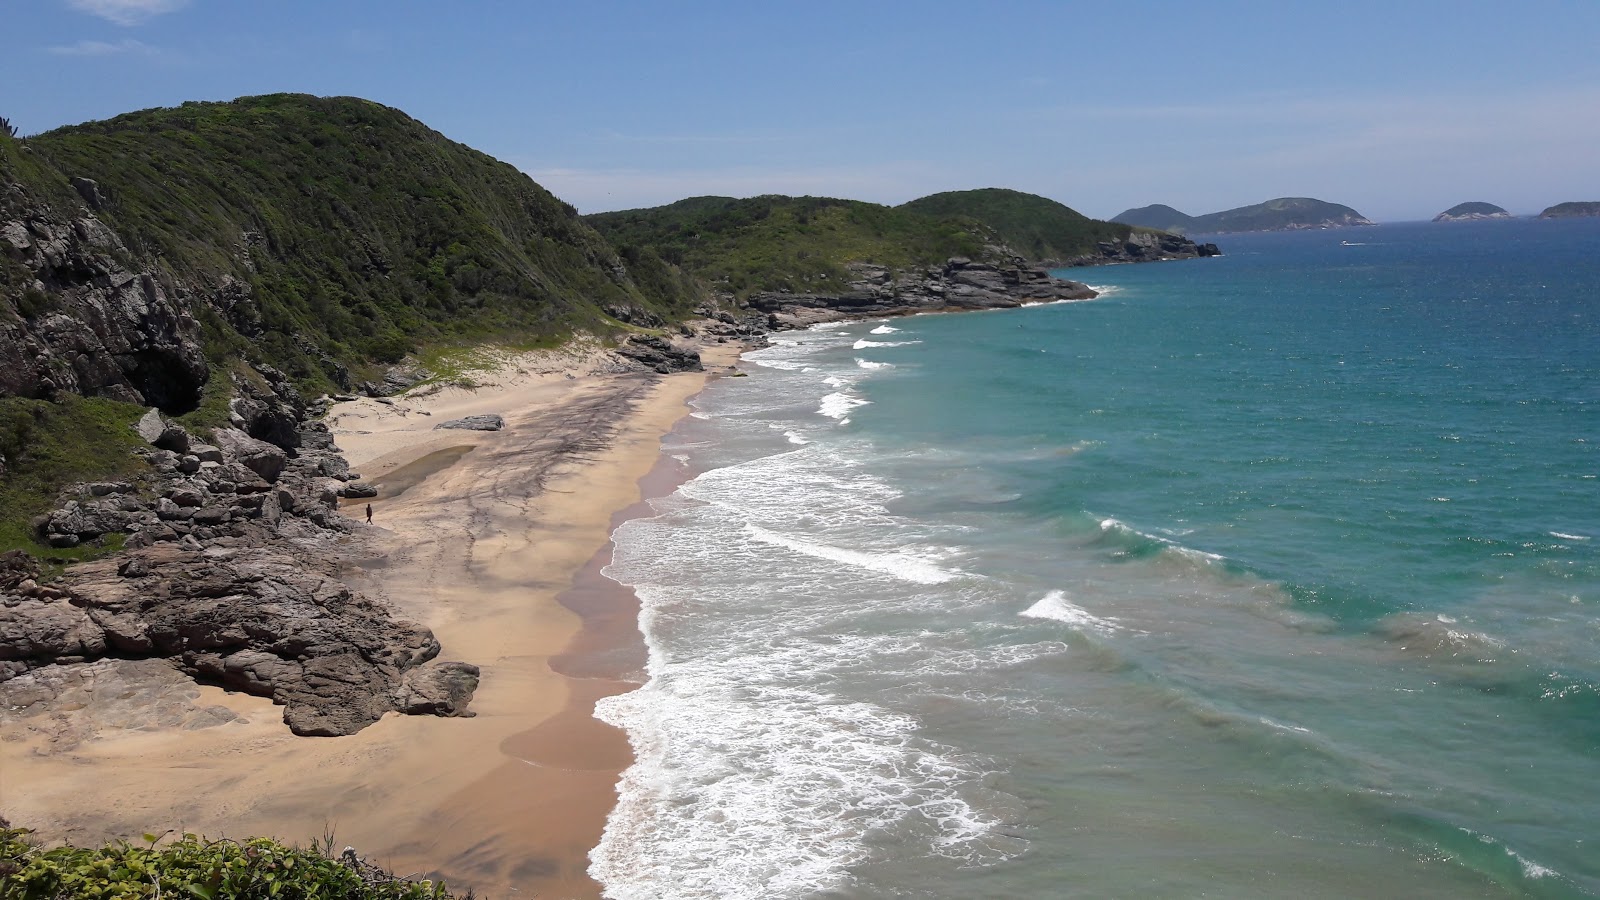 Foto af Praia Brava - populært sted blandt afslapningskendere